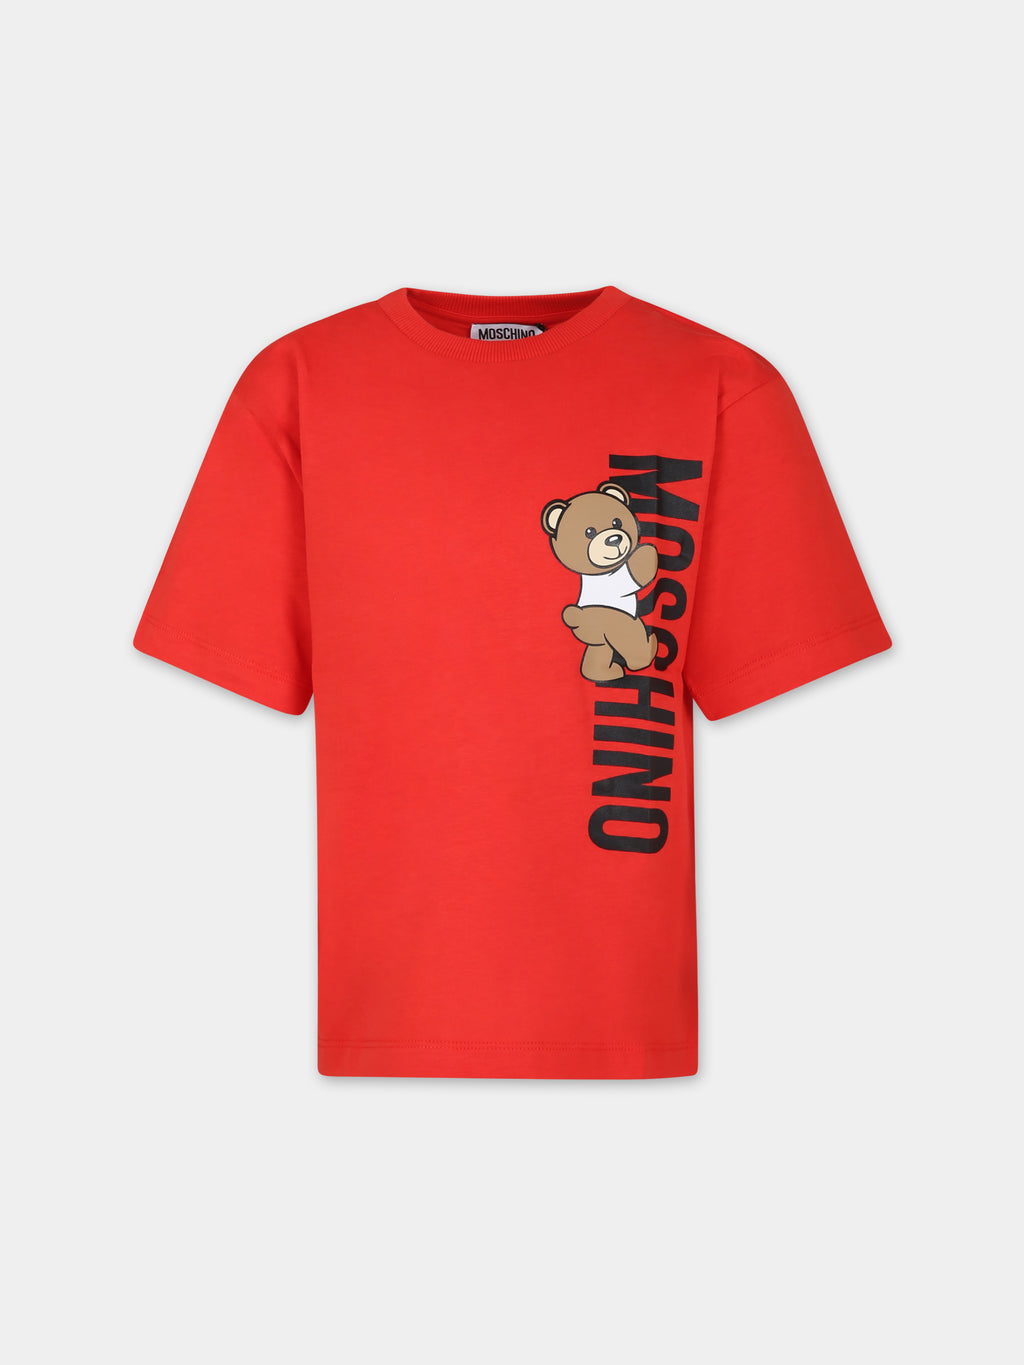 T-shirt rossa per bambini con Teddy Bear e logo